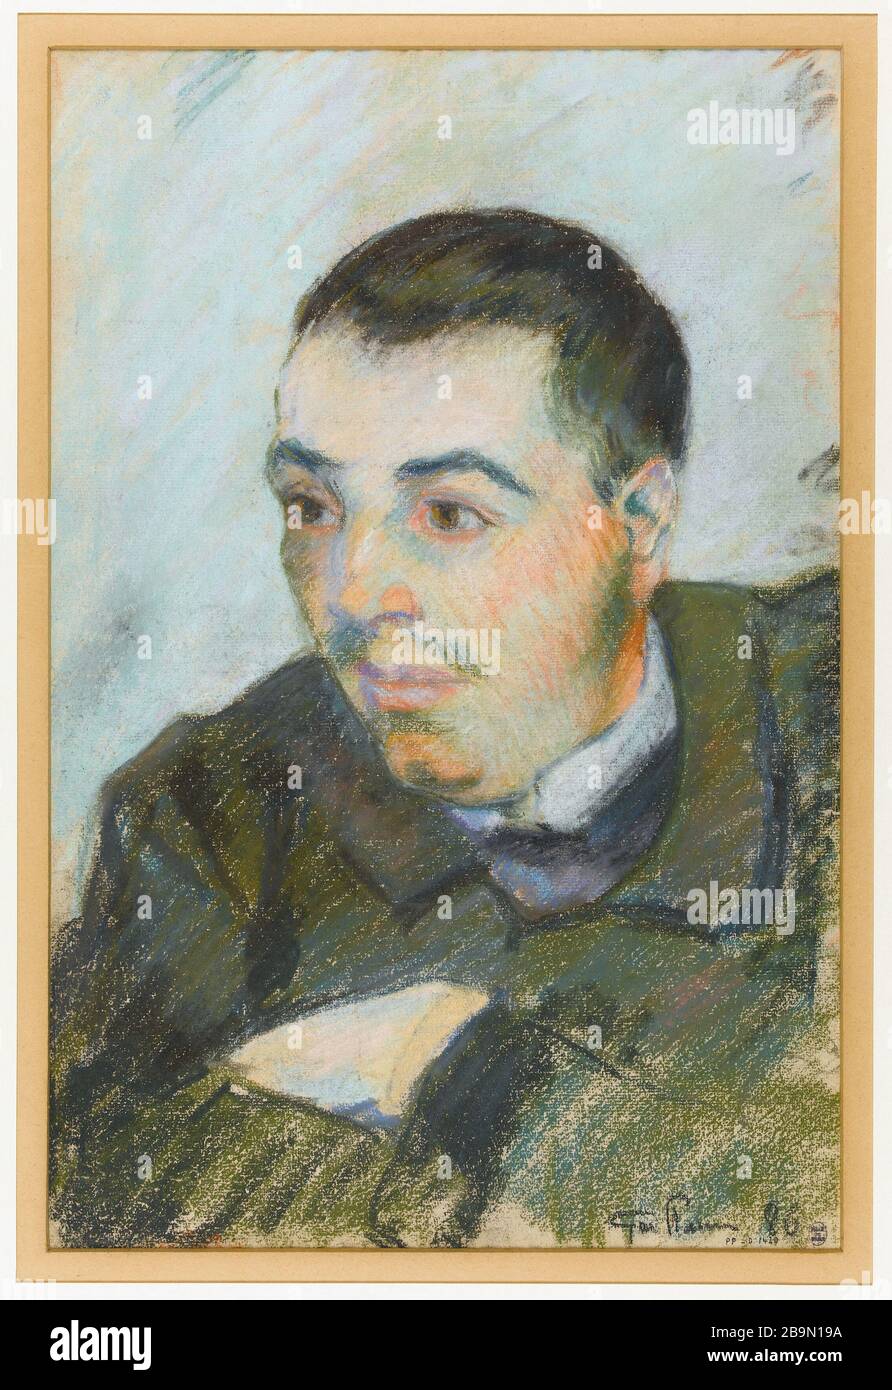 PORTRÄT VON MAN (VORNE) / BELADEN EINES LASTKAHNS MIT ZWEI FISCHERN (HINTEN) ARMAND GUILLAUMIN (1841-1927). 'Portrait d'homme (recto) / Chargement d'une péniche avec deux pêcheurs (verso)'. Pastell au recto / crayon noir au verso. Im Jahr 1886. Musée des Beaux-Arts de la Ville de Paris, Petit Palais. Stockfoto